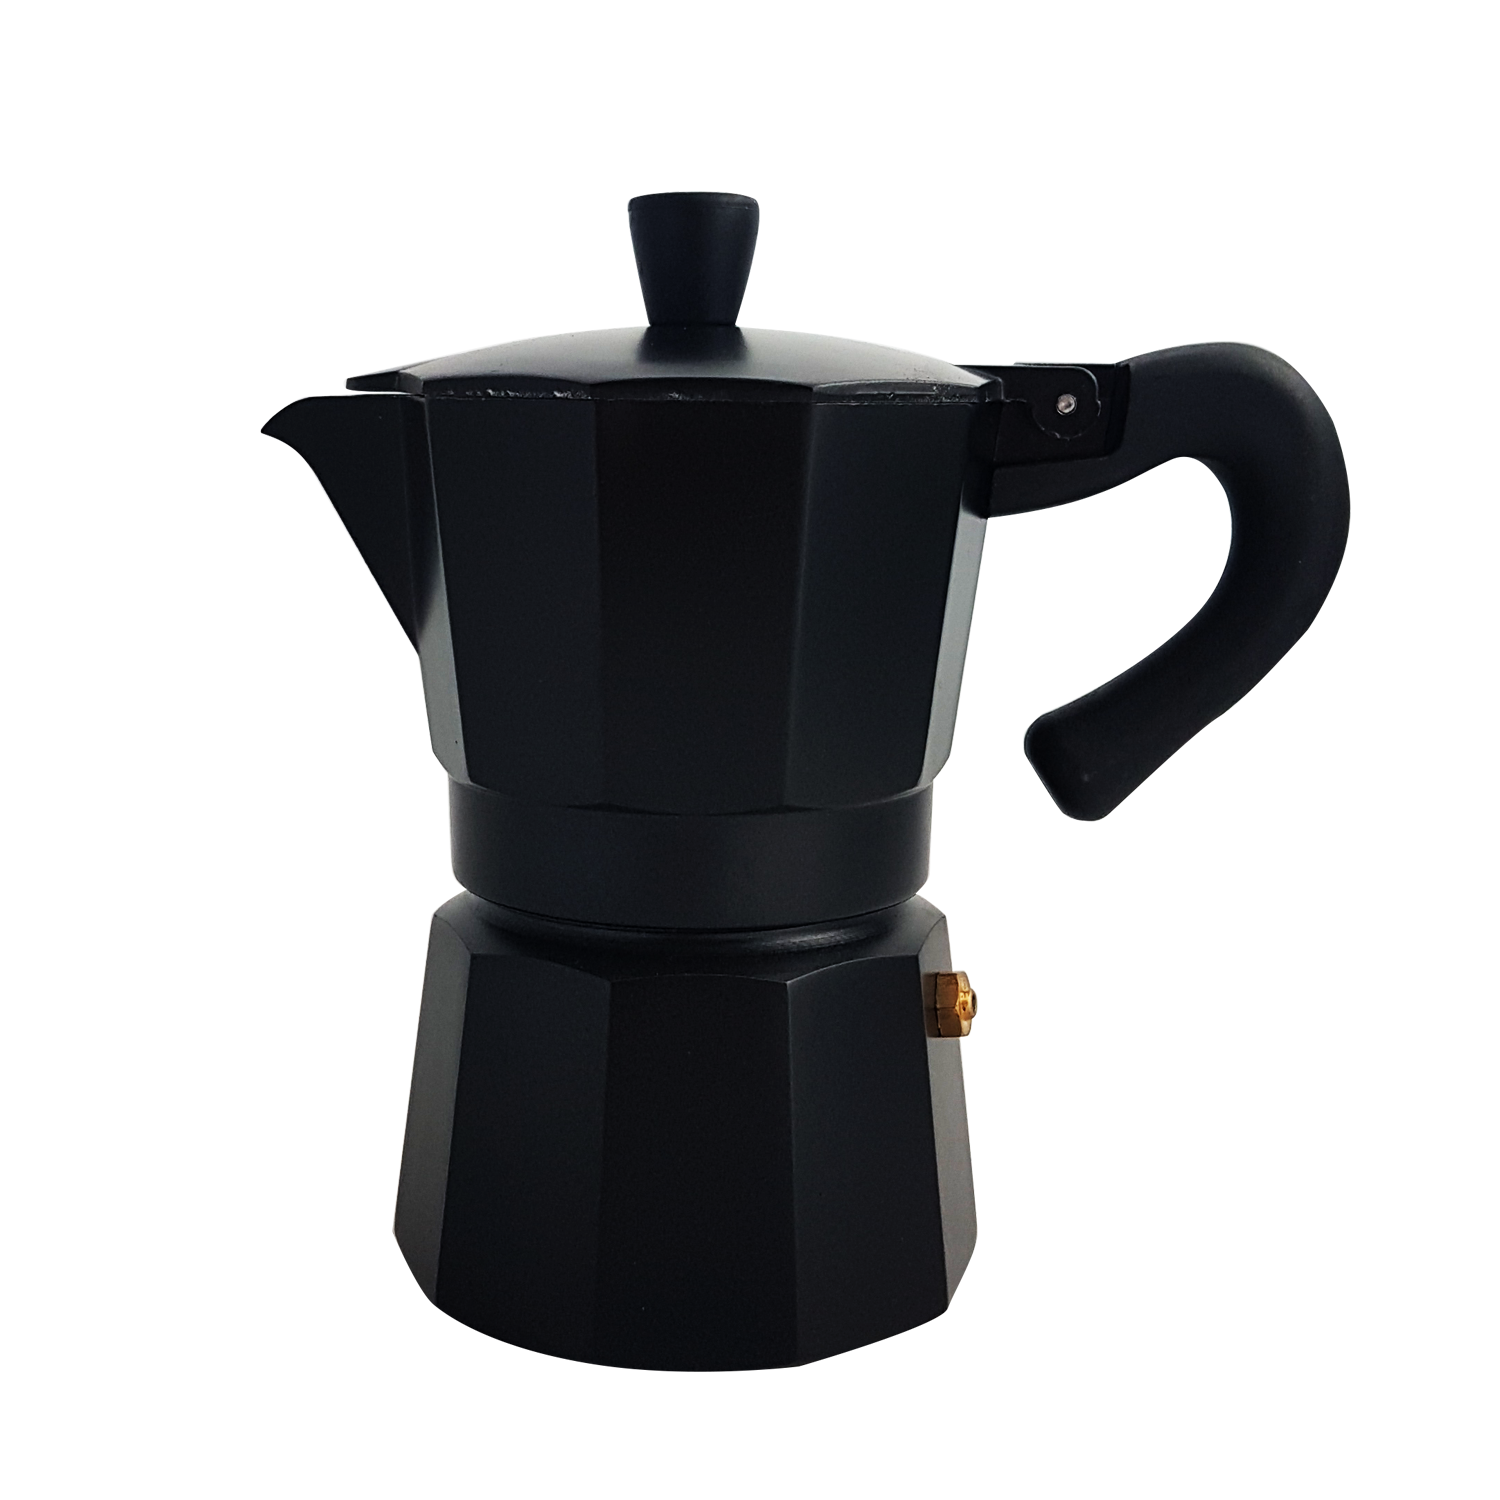 หม้อต้มกาแฟสด เอสเพรสโซ่ ขนาด 3 ถ้วย หรือ150ml. By Scanproducts Moka Pot 3cup Premium Aluminum-Black